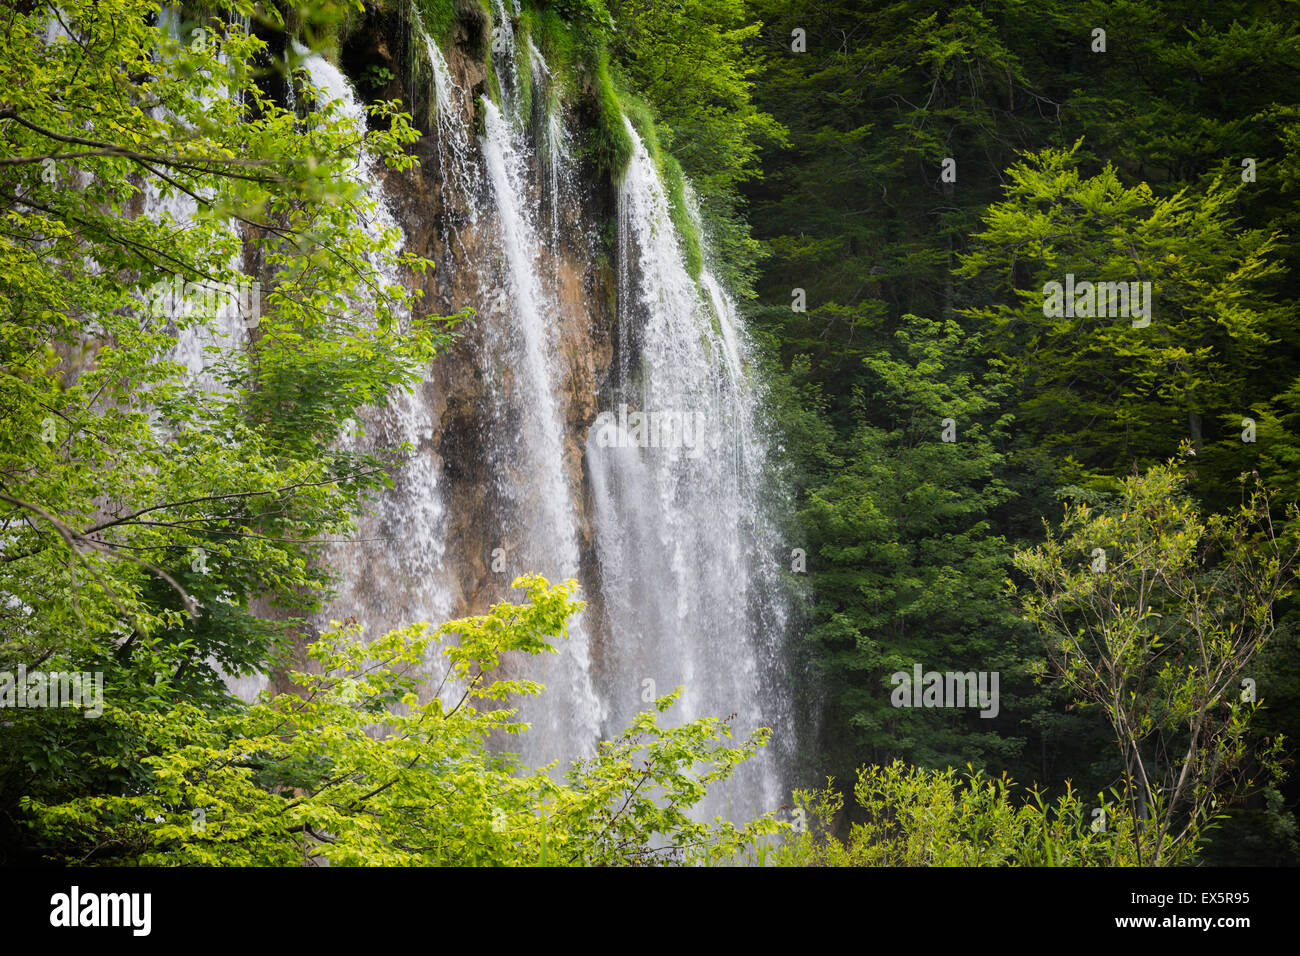 Parque Nacional de los Lagos de Plitvice, Lika-Senj County & Karlovac County, Croacia. Cascadas dentro del parque. Foto de stock